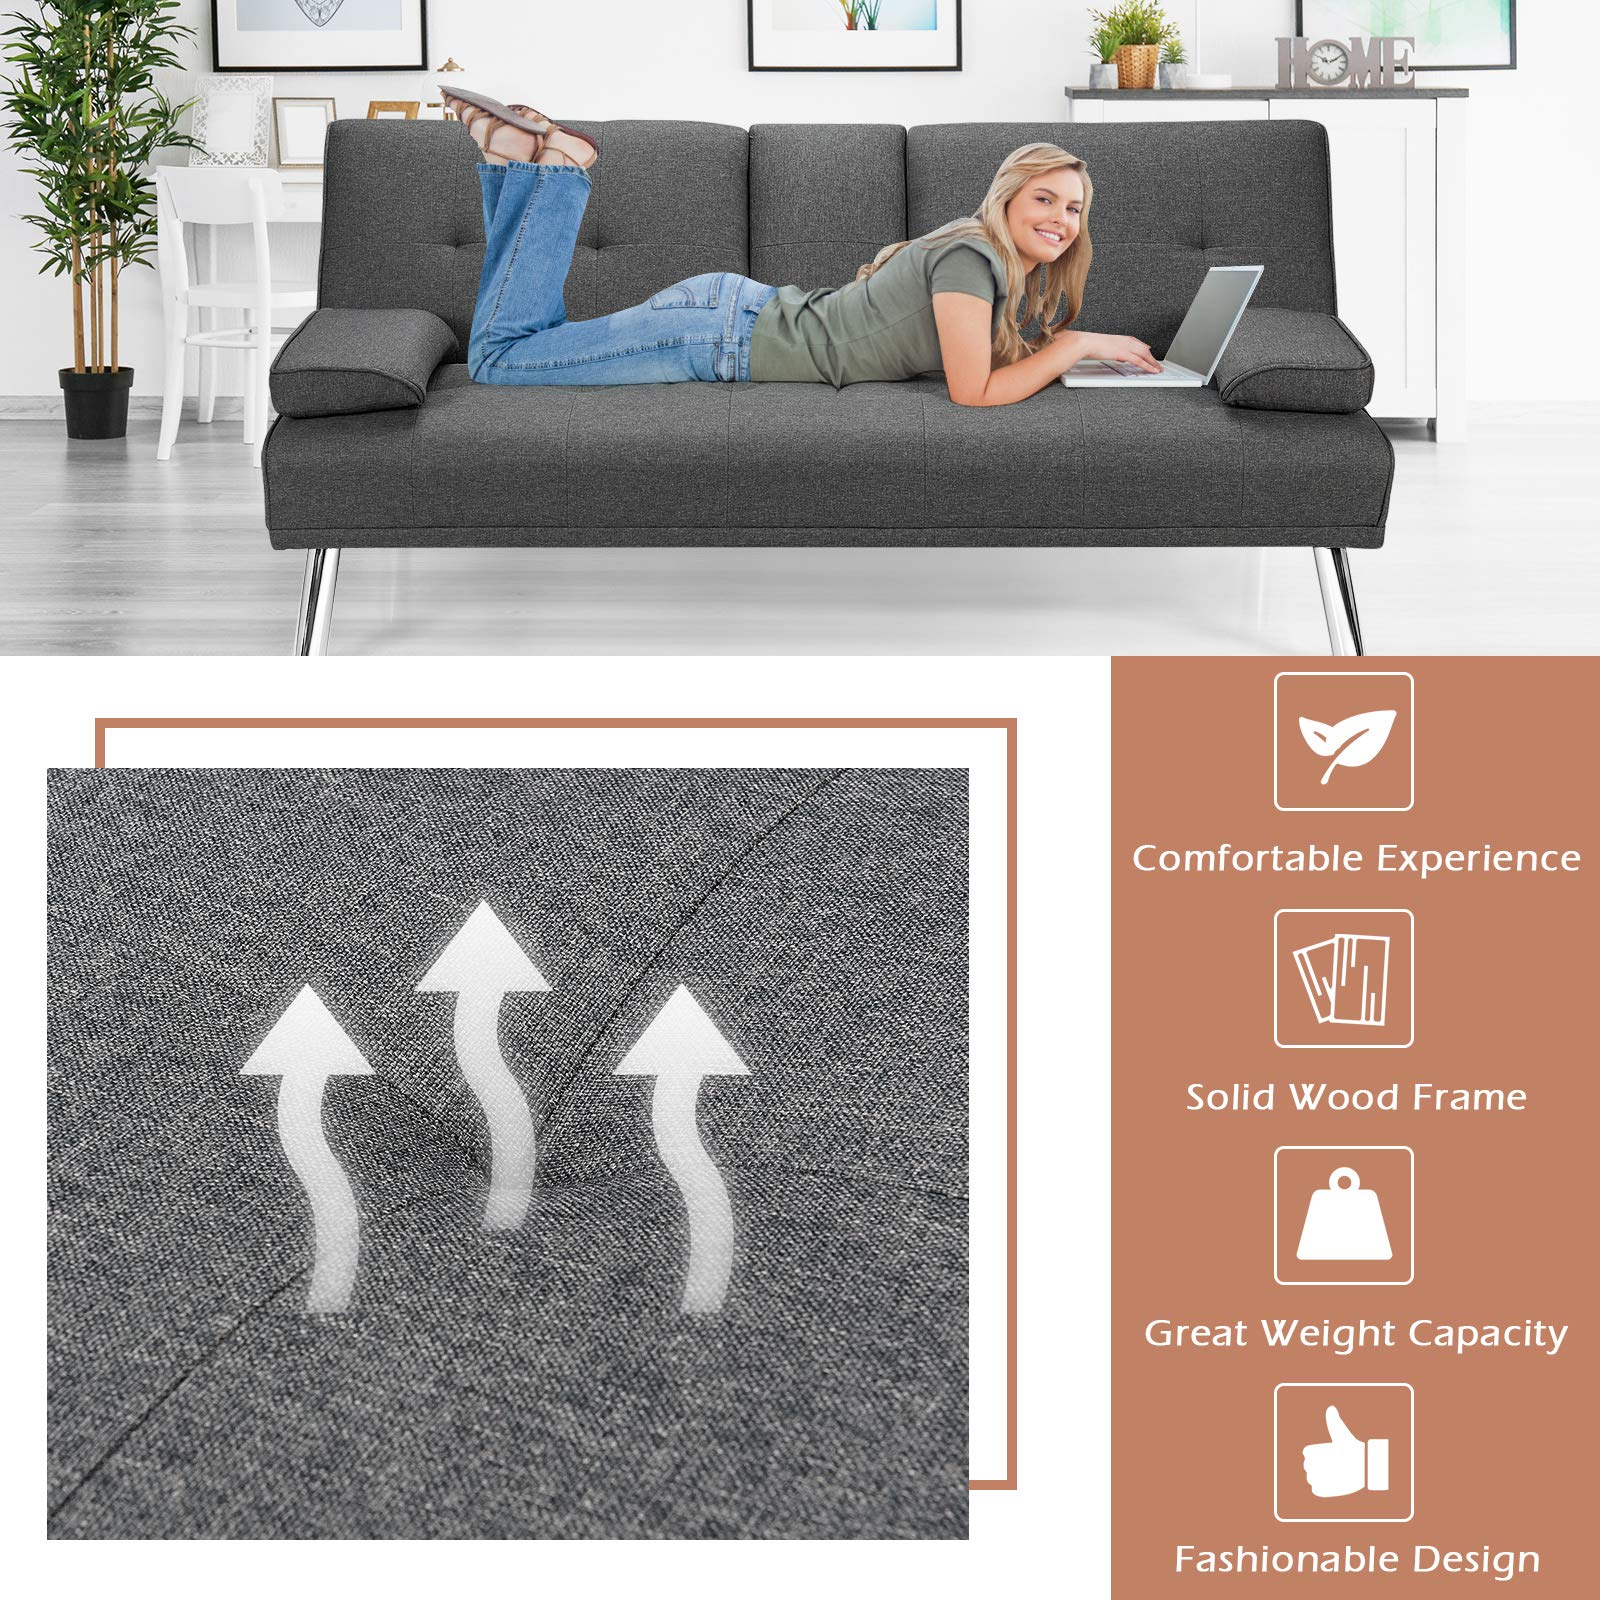 Giantex Modern Convertible Futon Sofa Bed